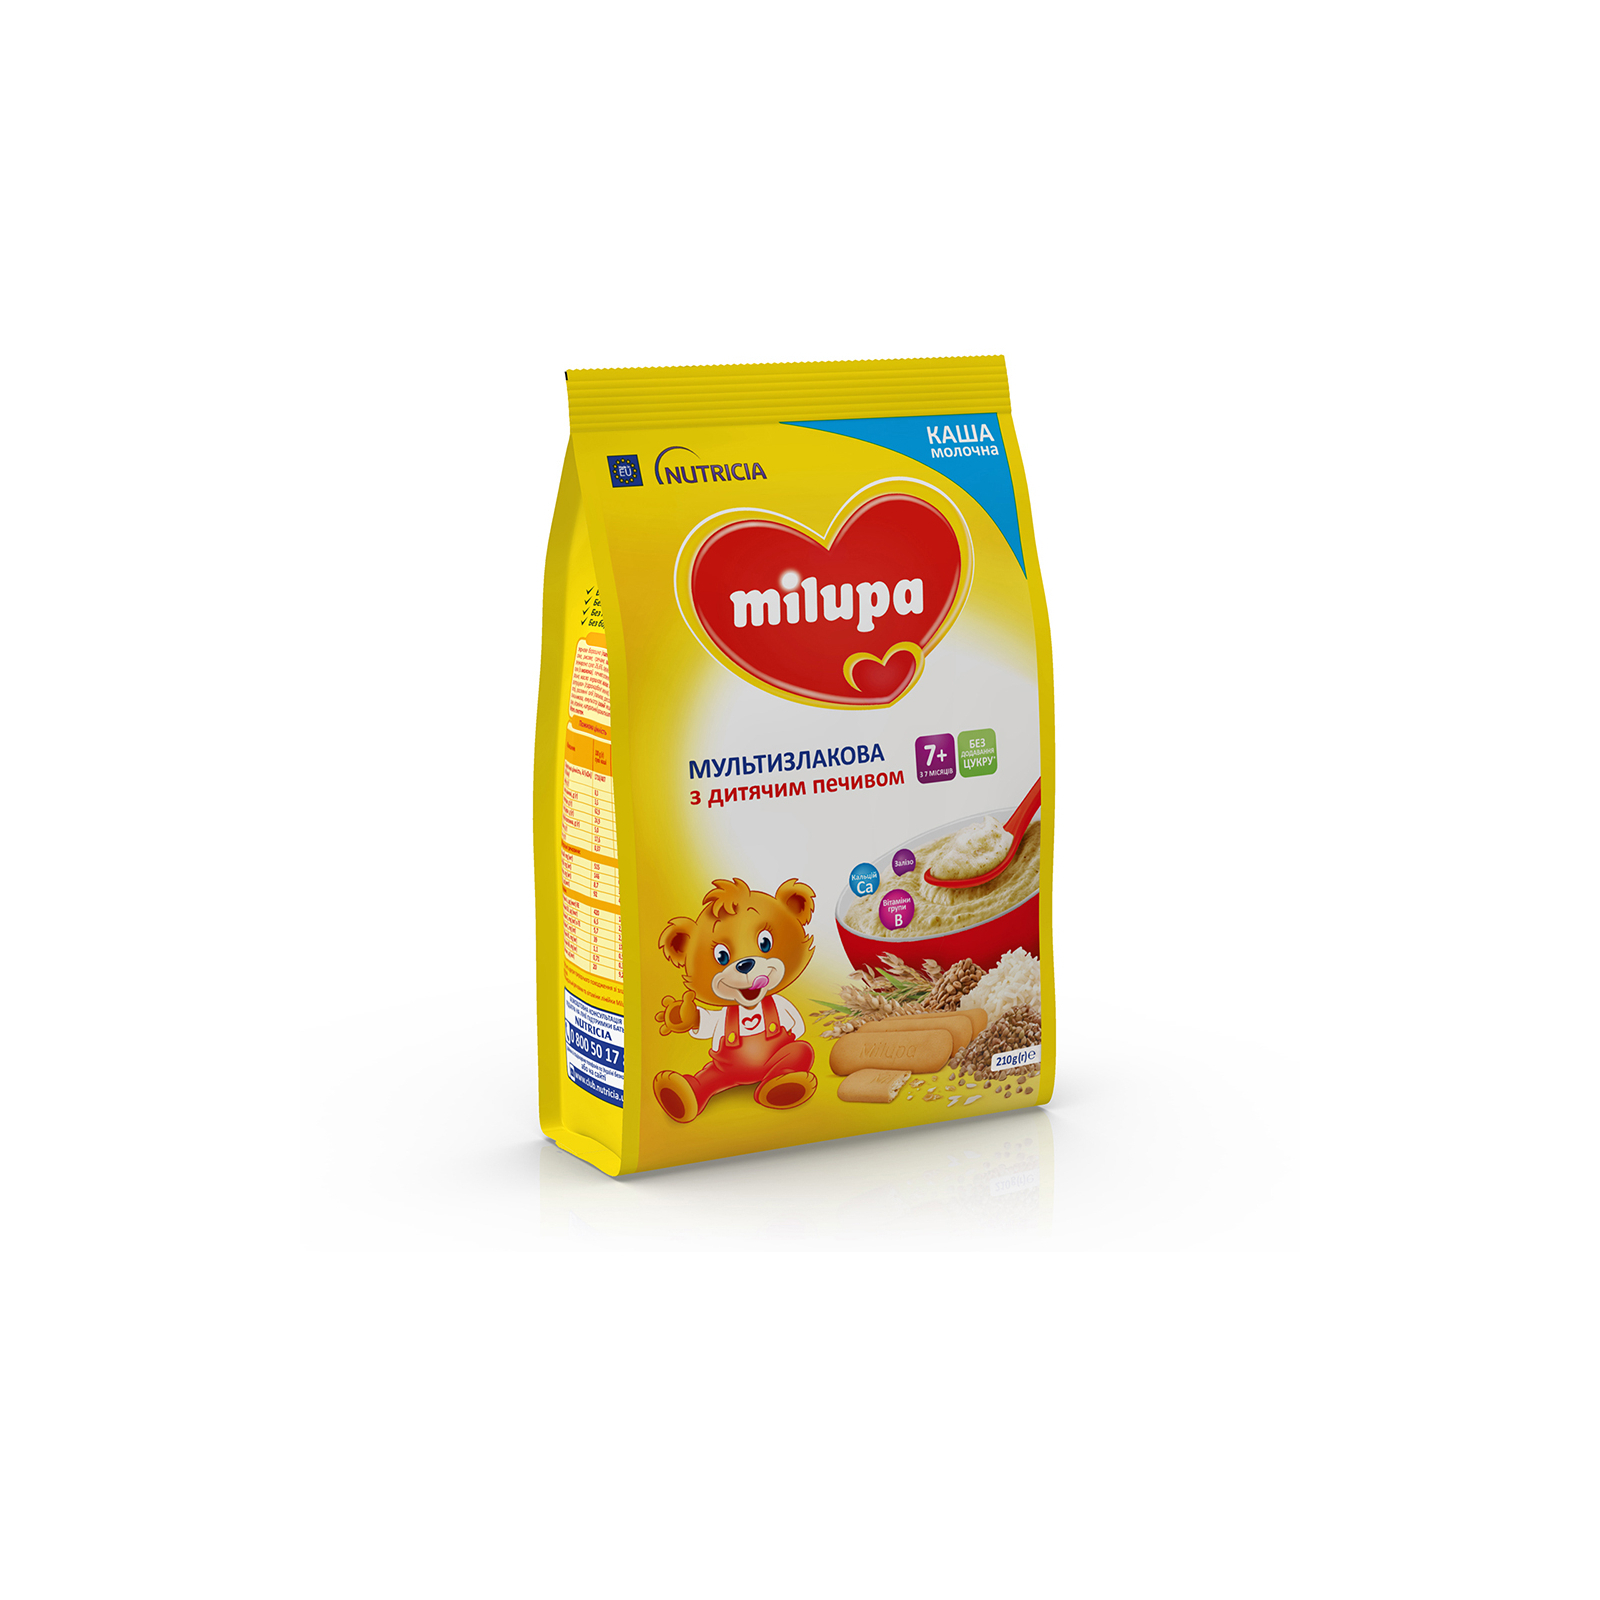 Детская каша Milupa молочная Мультизлаковая с детским печеньем 210 г (5900852931161) изображение 6